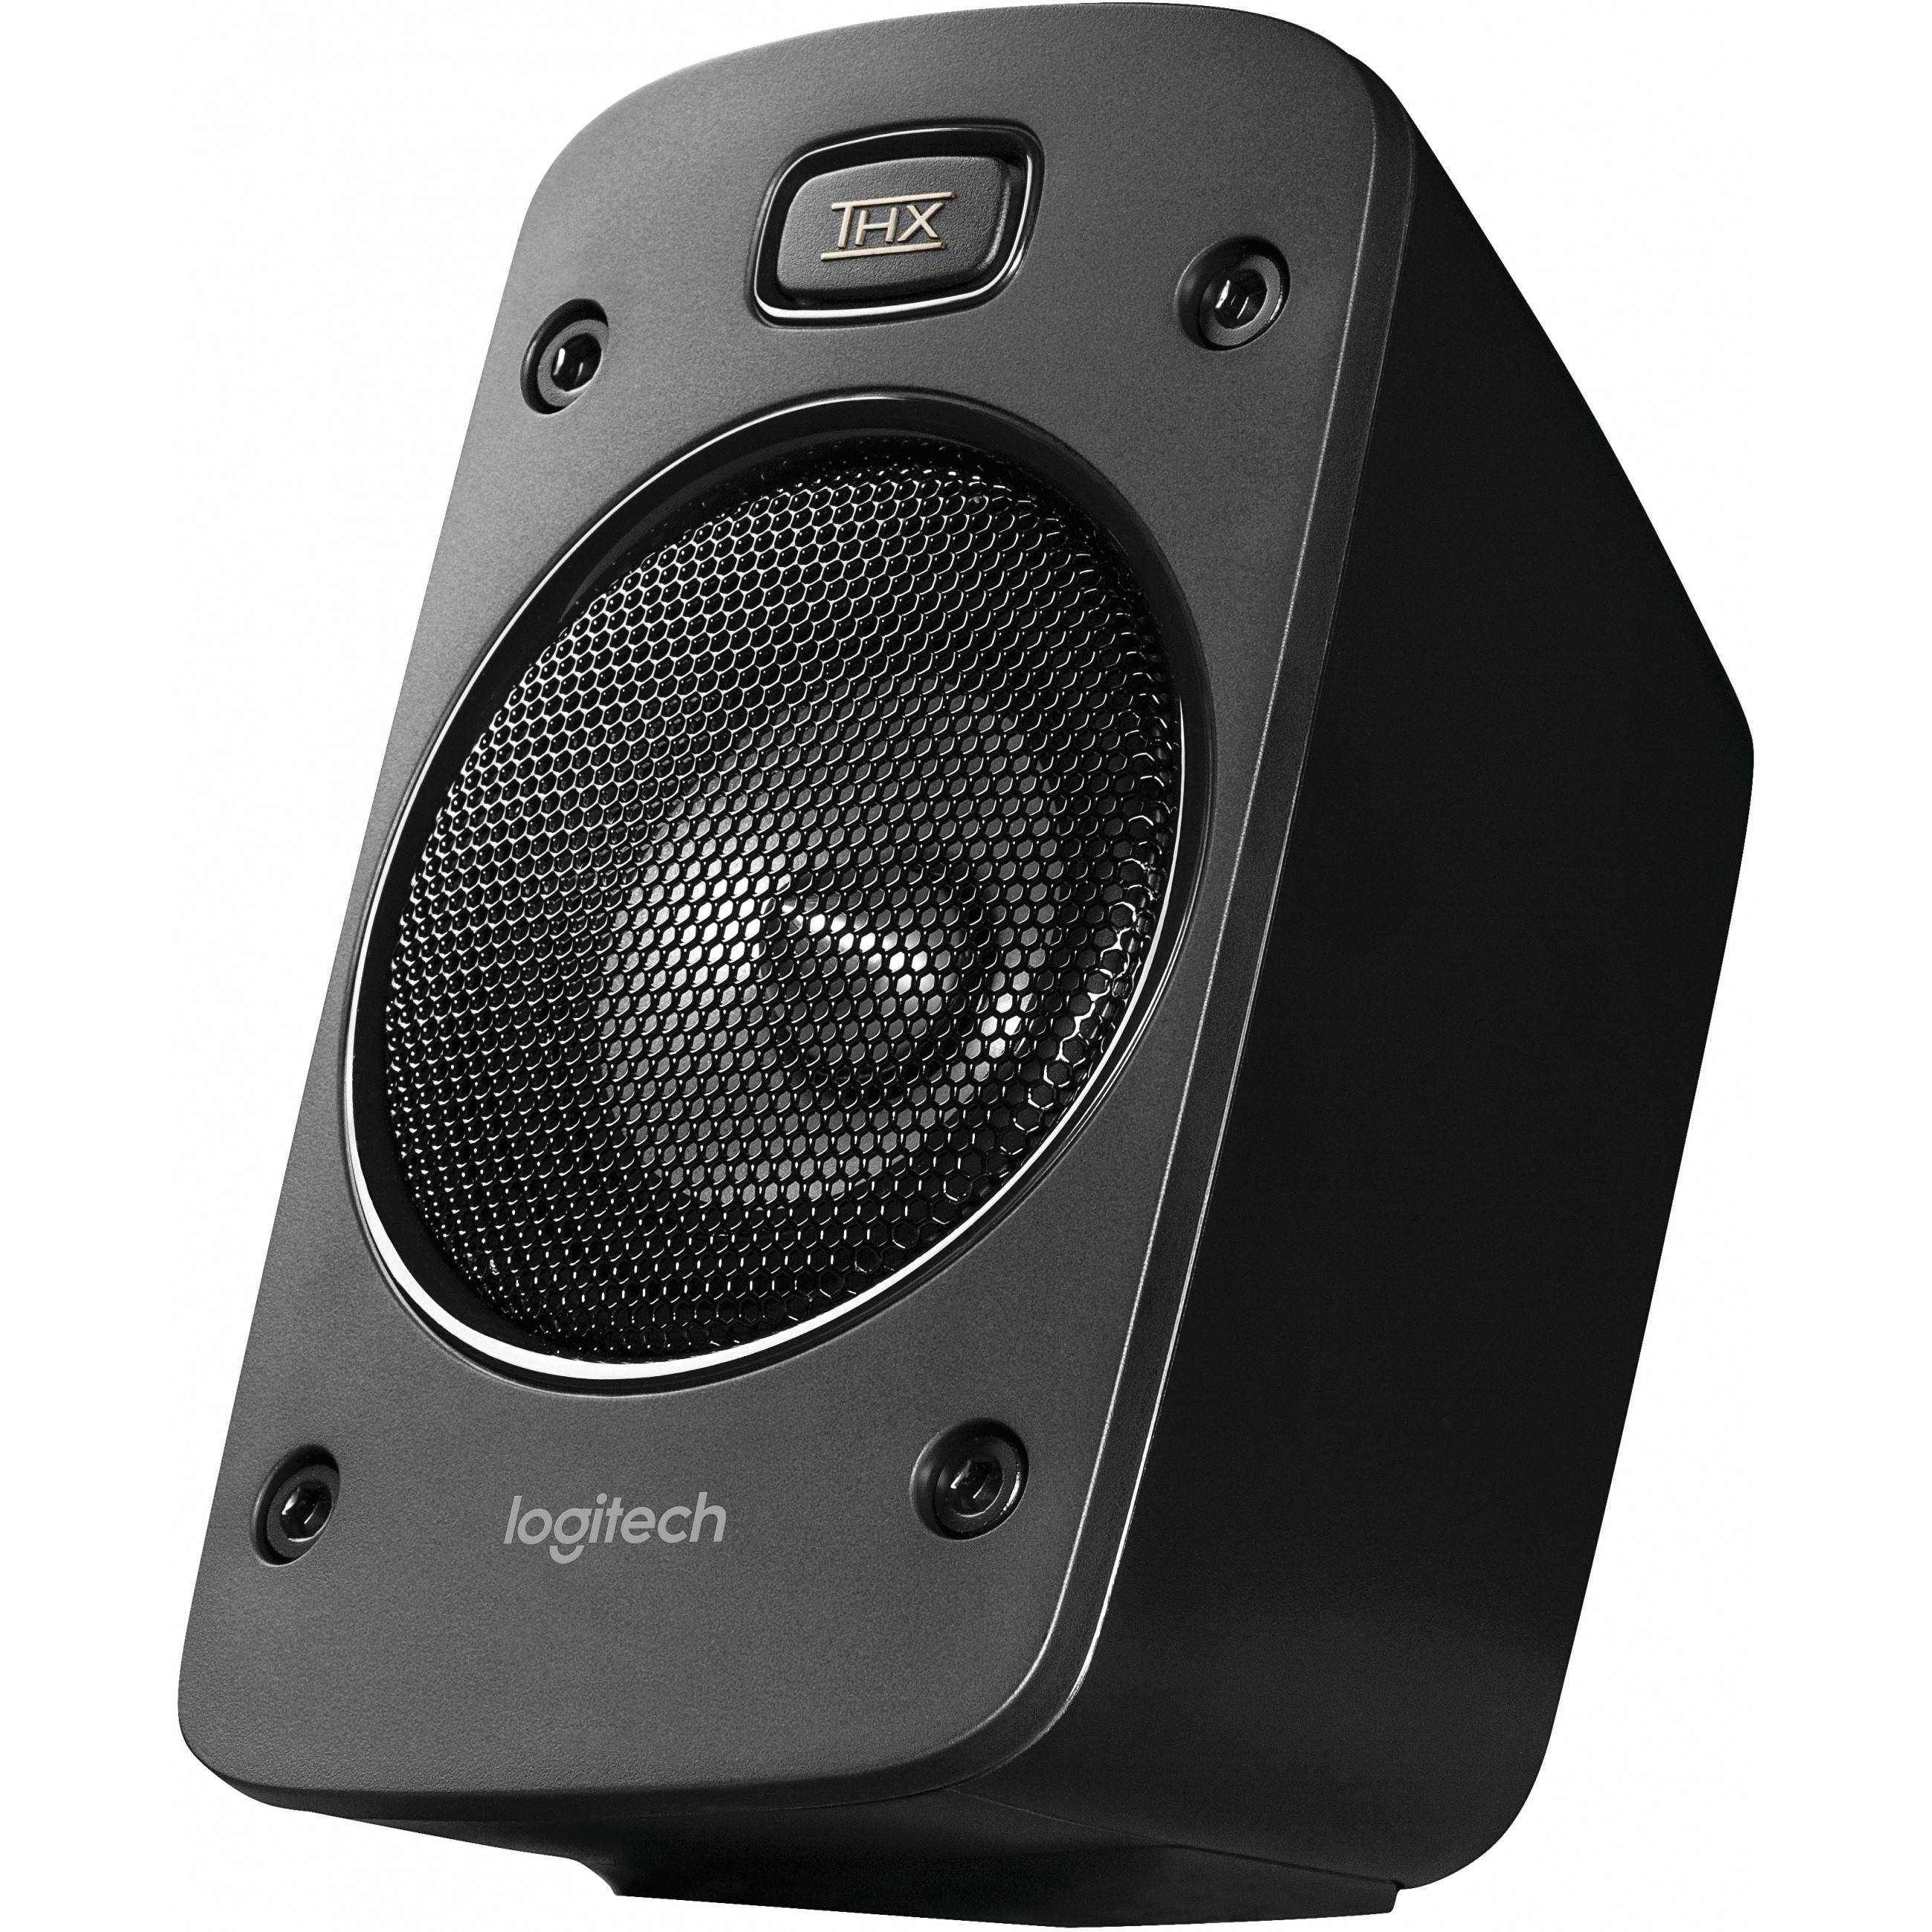 Logitech Z906 Thx Surround Sound 500 W Schwarz 5.1 Kanäle